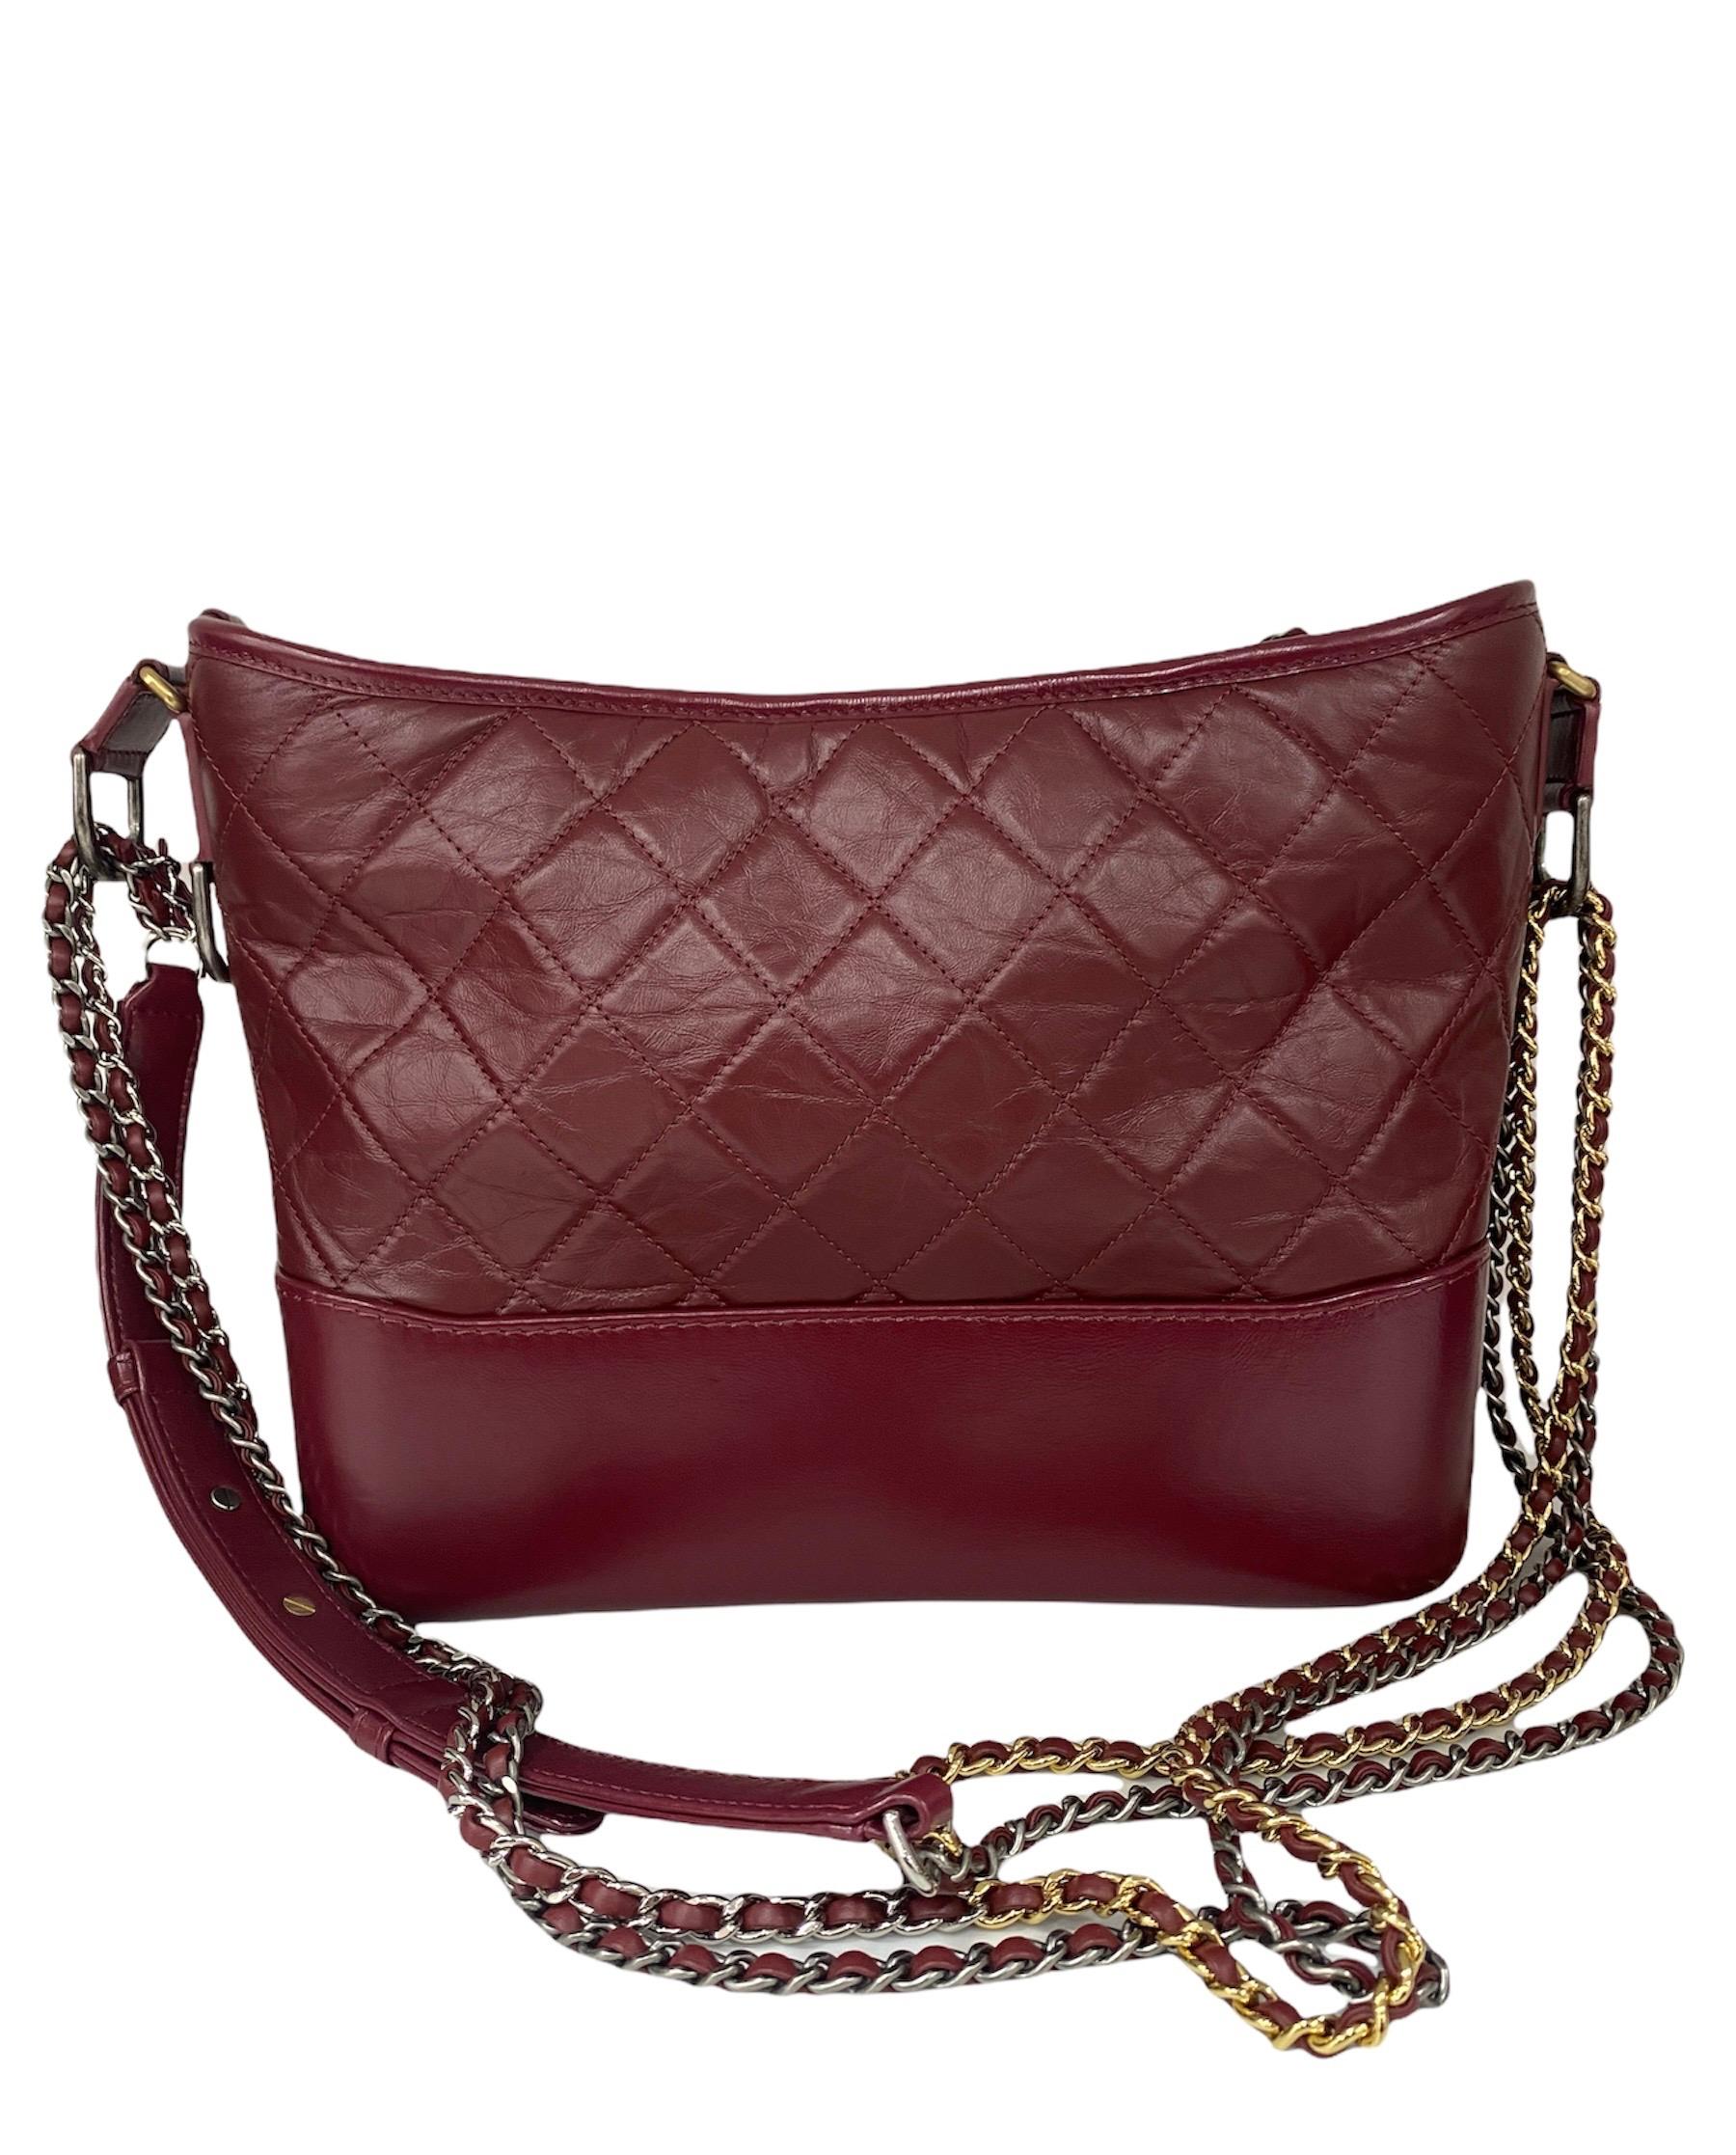 Brown Chanel Bordeaux Leather Gabrielle Bag For Sale